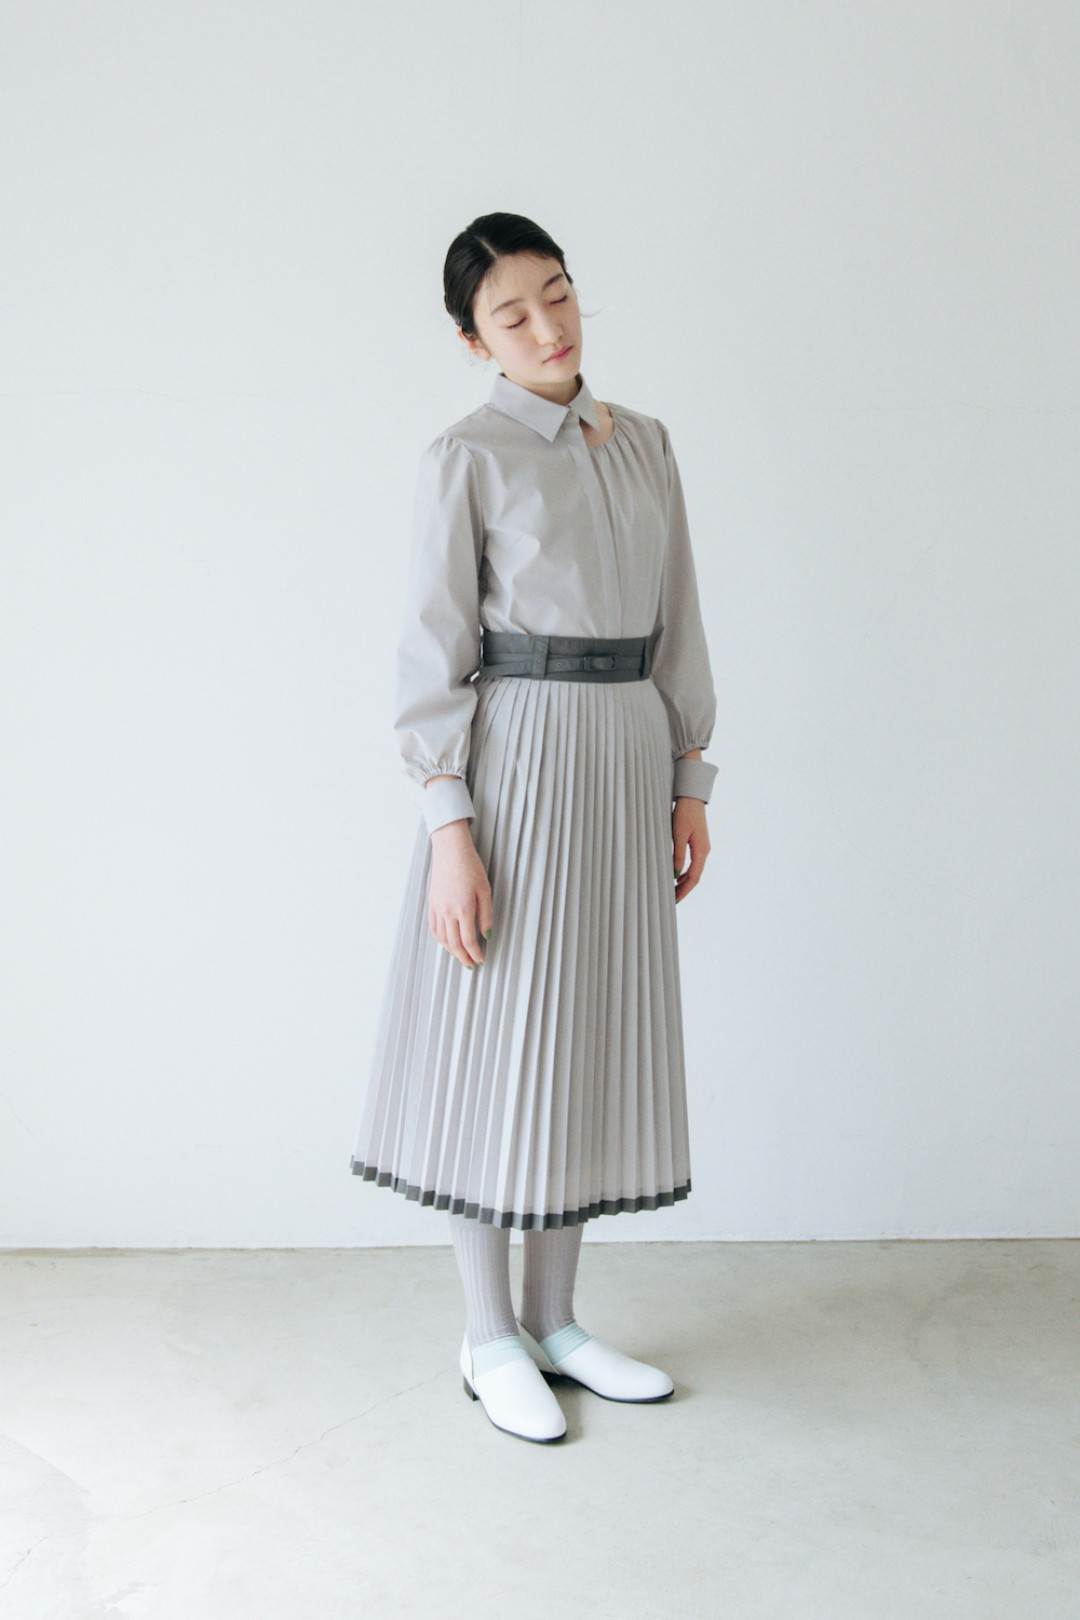 【ルック】ritsuko karita《plain》2020秋冬コレクション | FASHION | FASHION HEADLINE